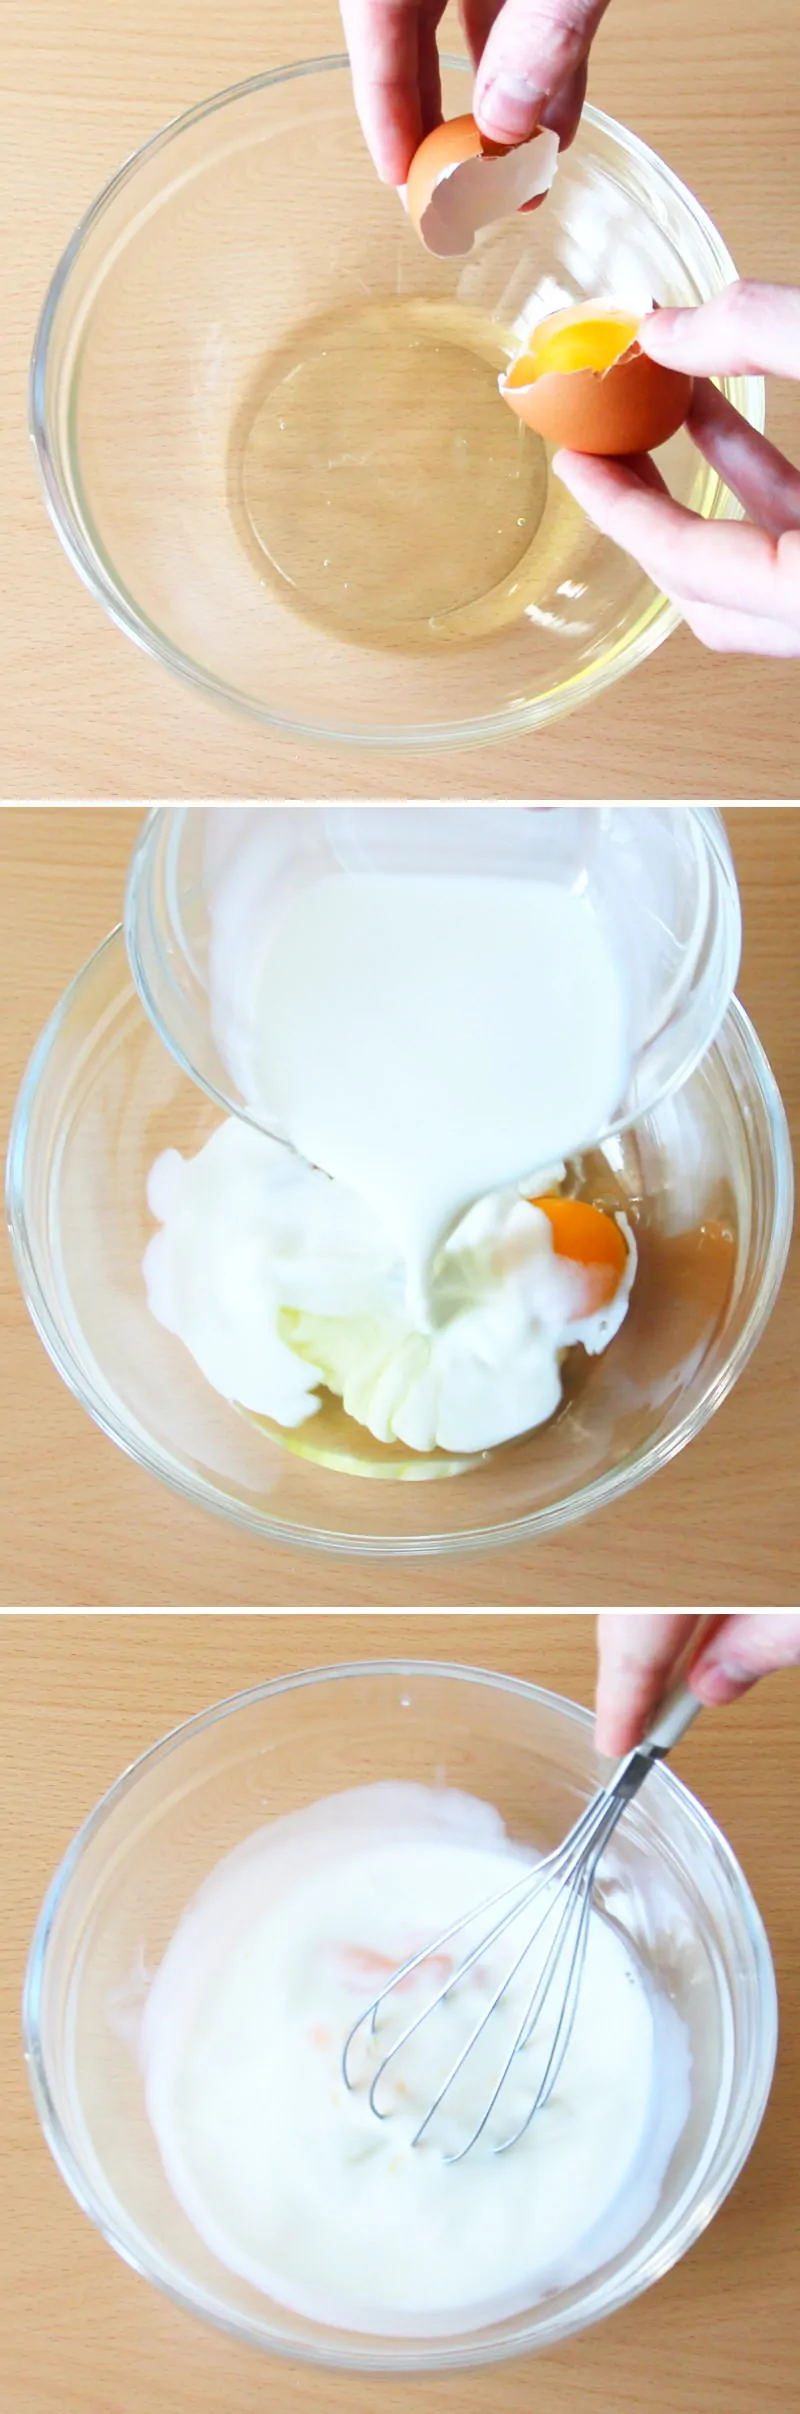 Dorayaki mit Anko Schritt 2 Ei-Milch-Mischung herstellen